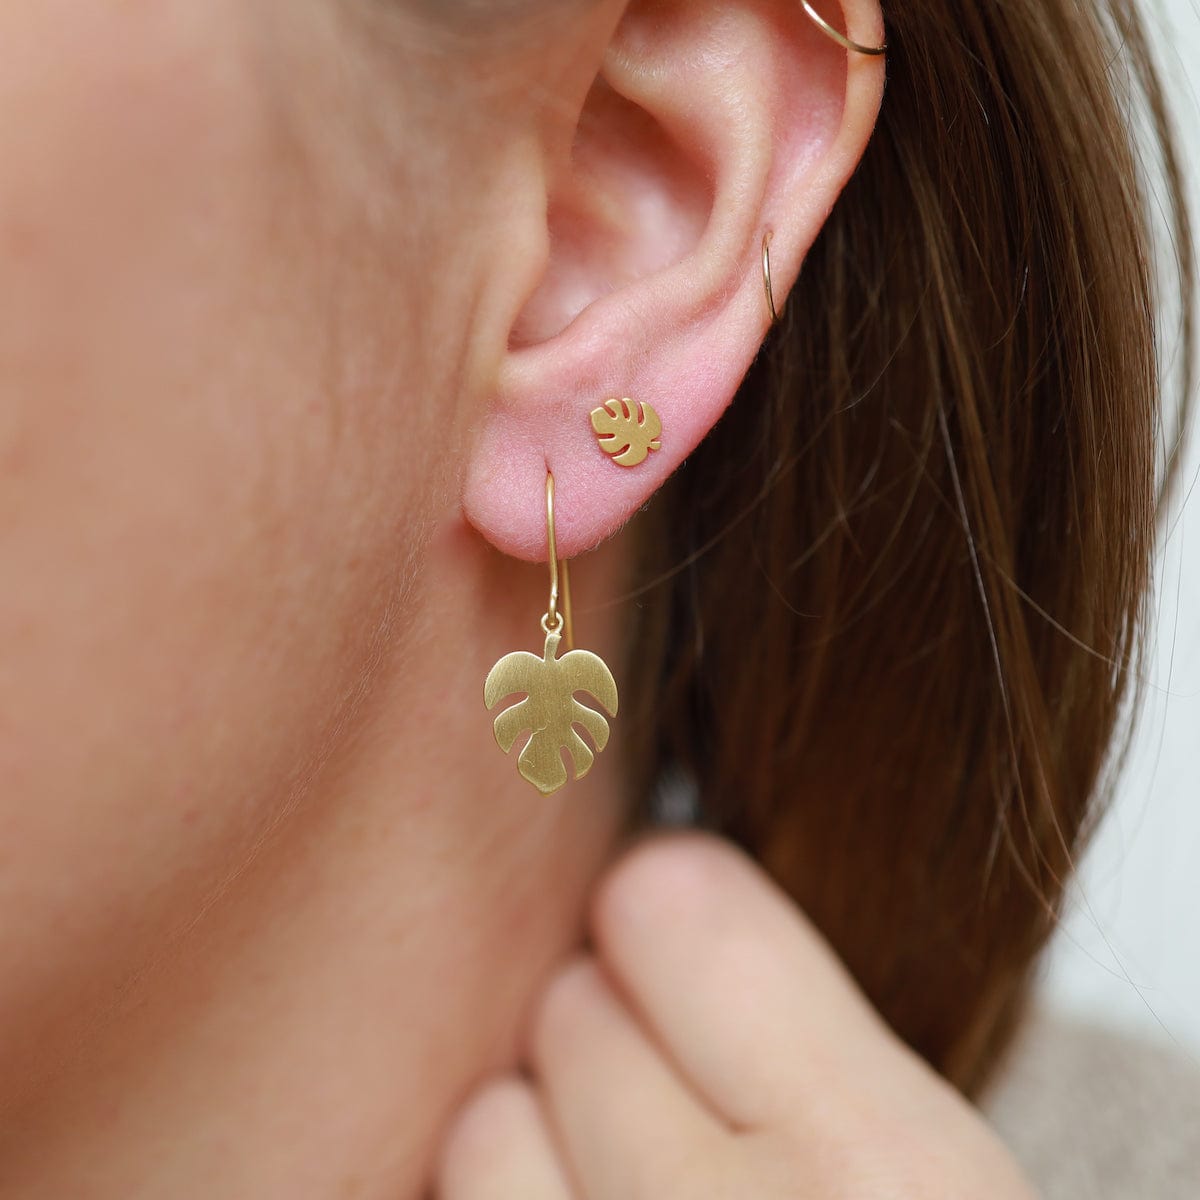 EAR-VRM Monstera Leaf Stud Earring - Brushed Gold Vermeil